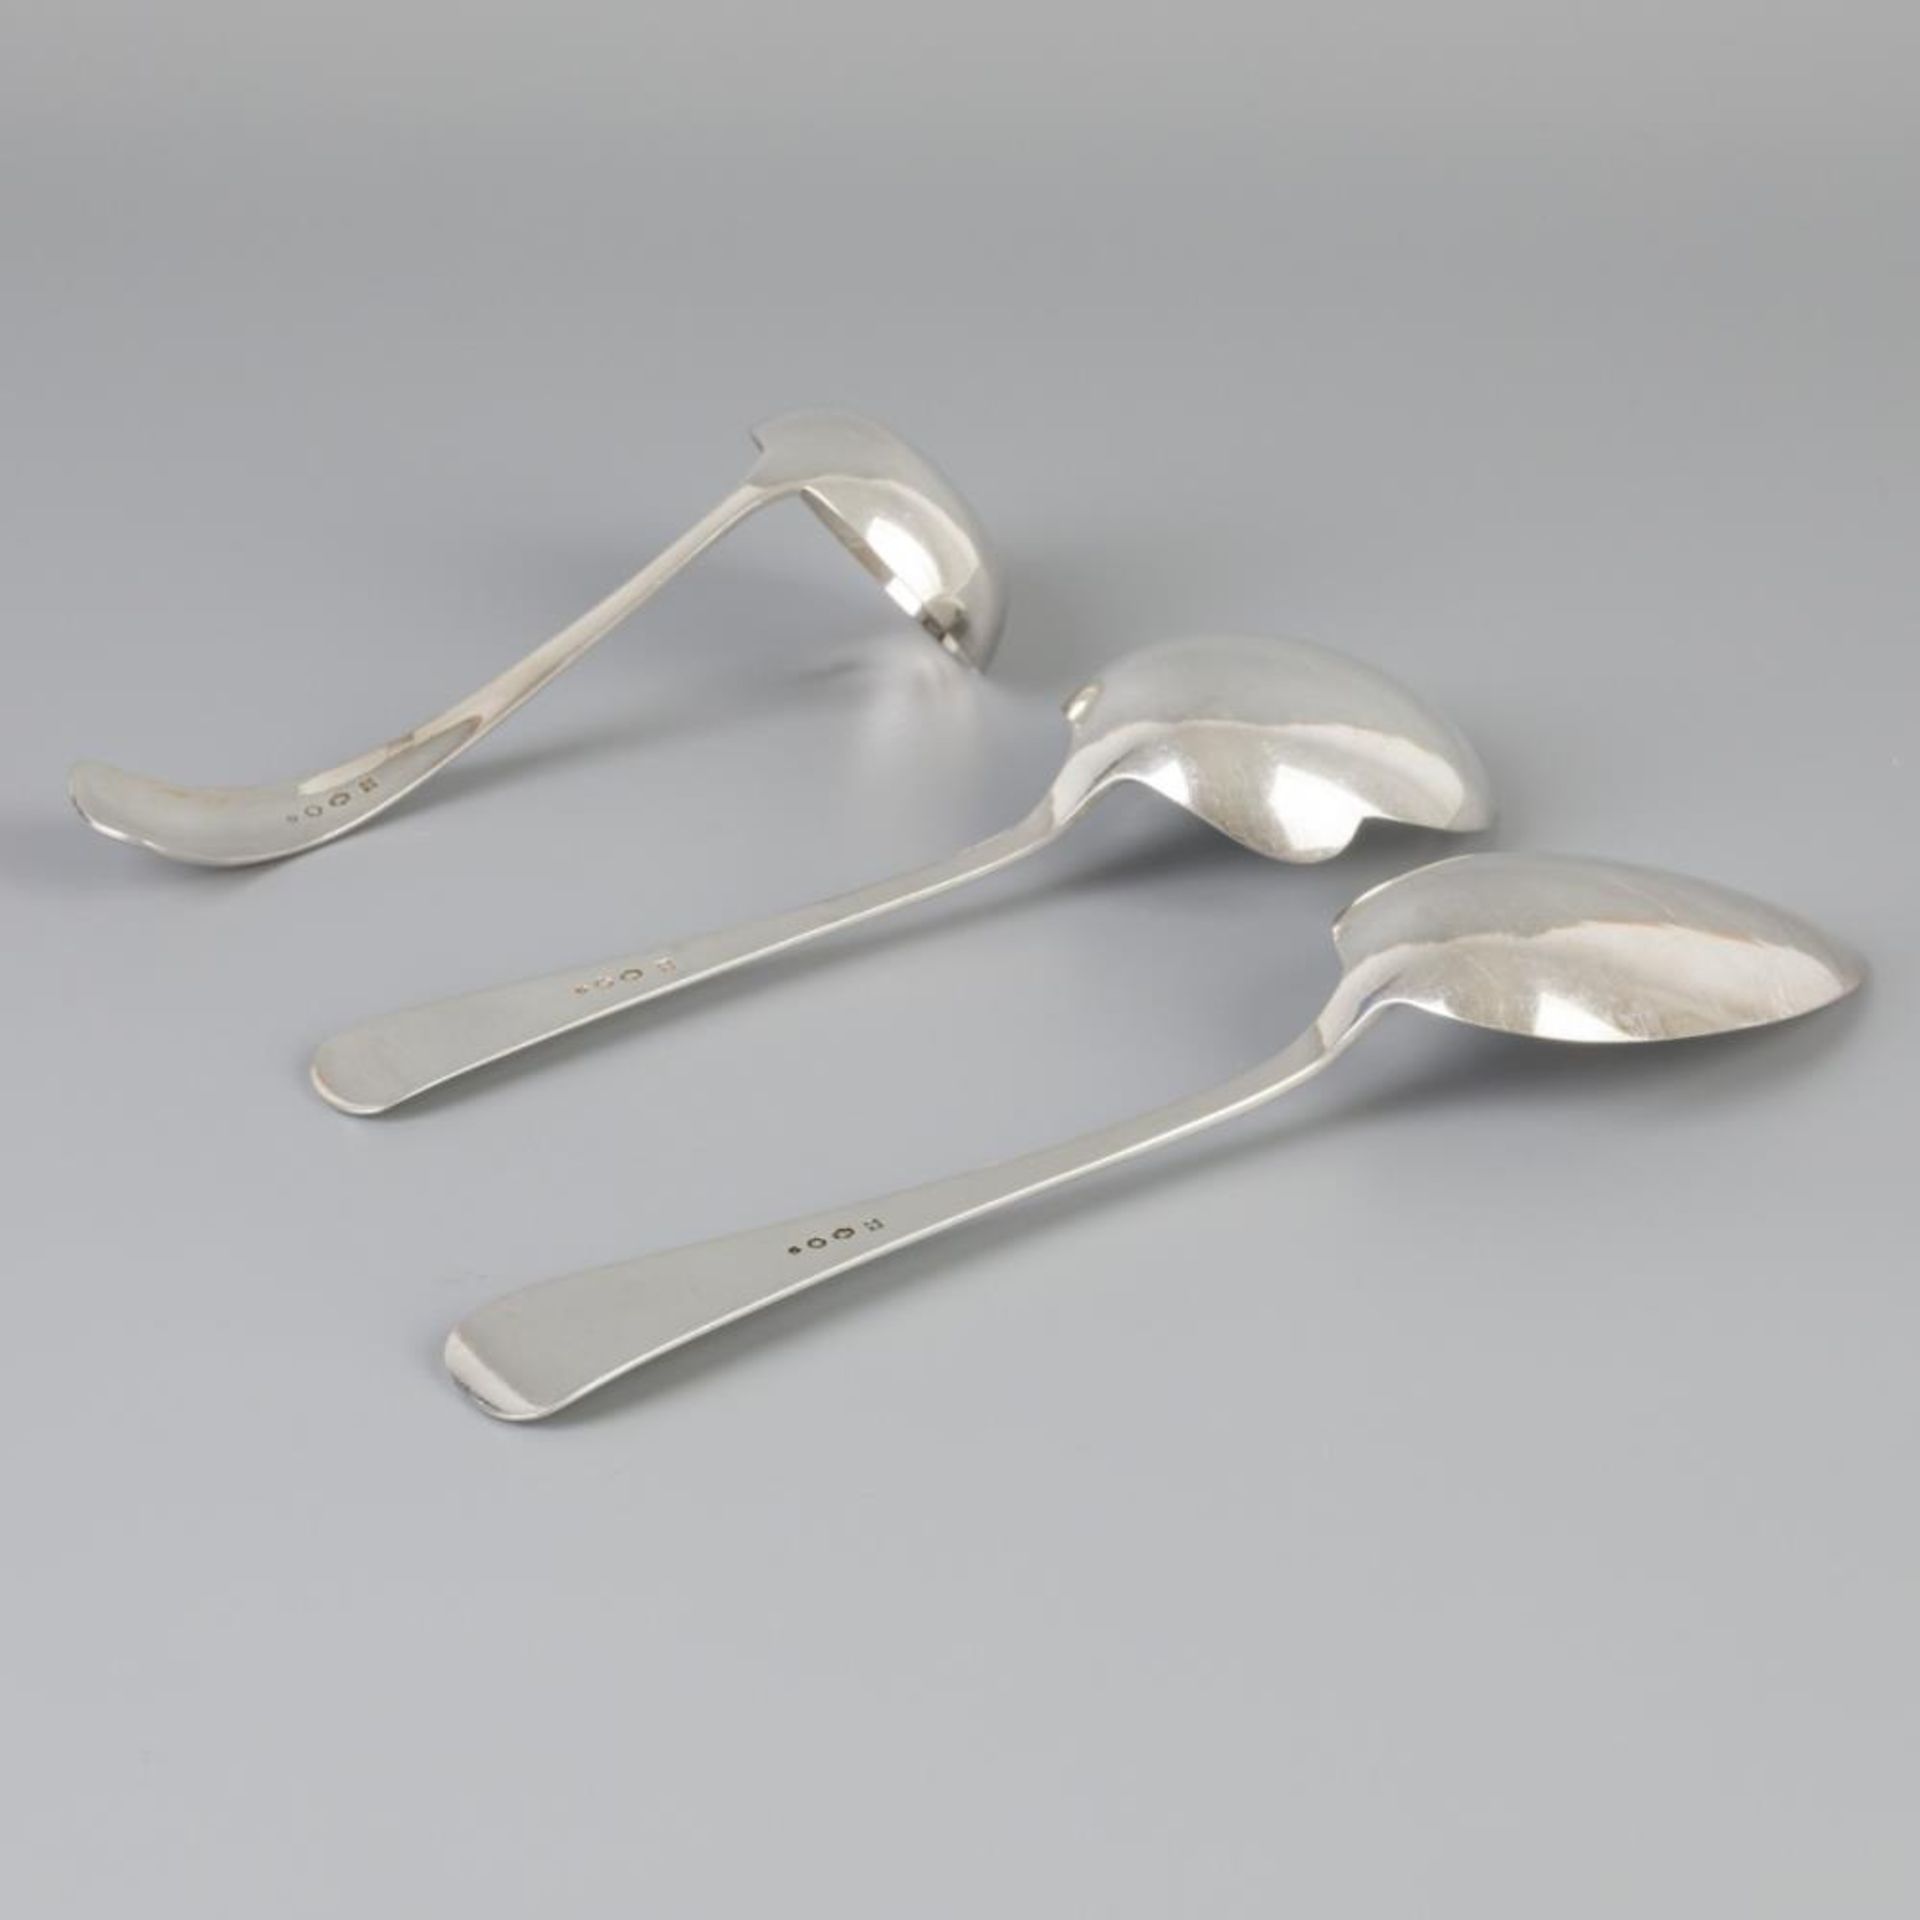 3 piece set of ladles "Haags Lofje" silver. - Bild 3 aus 7